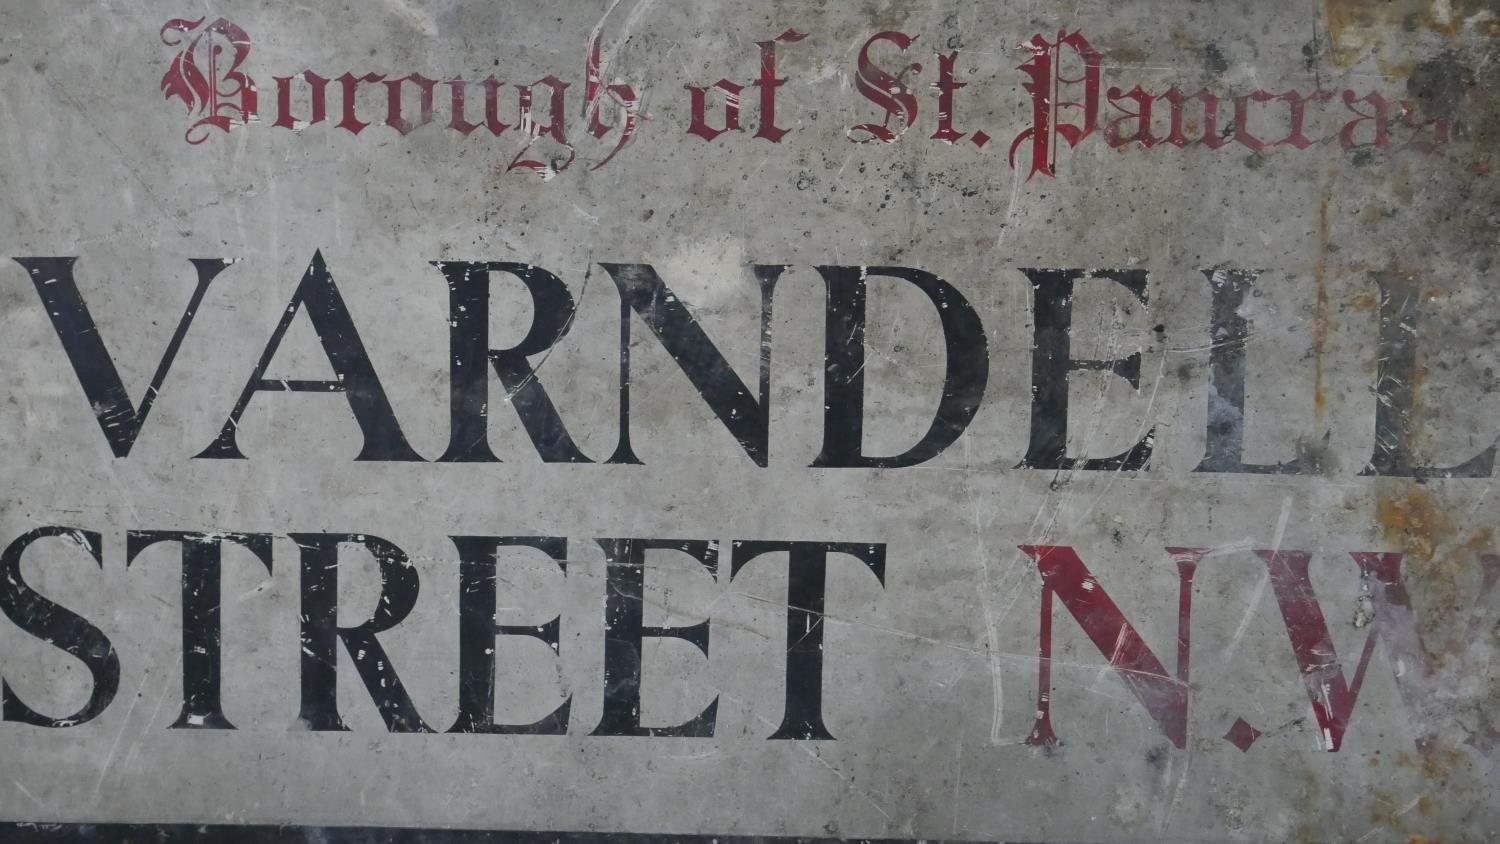 A vintage metal street sign, Varndell Street. Red and black lettering. H.46 W.92 cm - Image 2 of 4